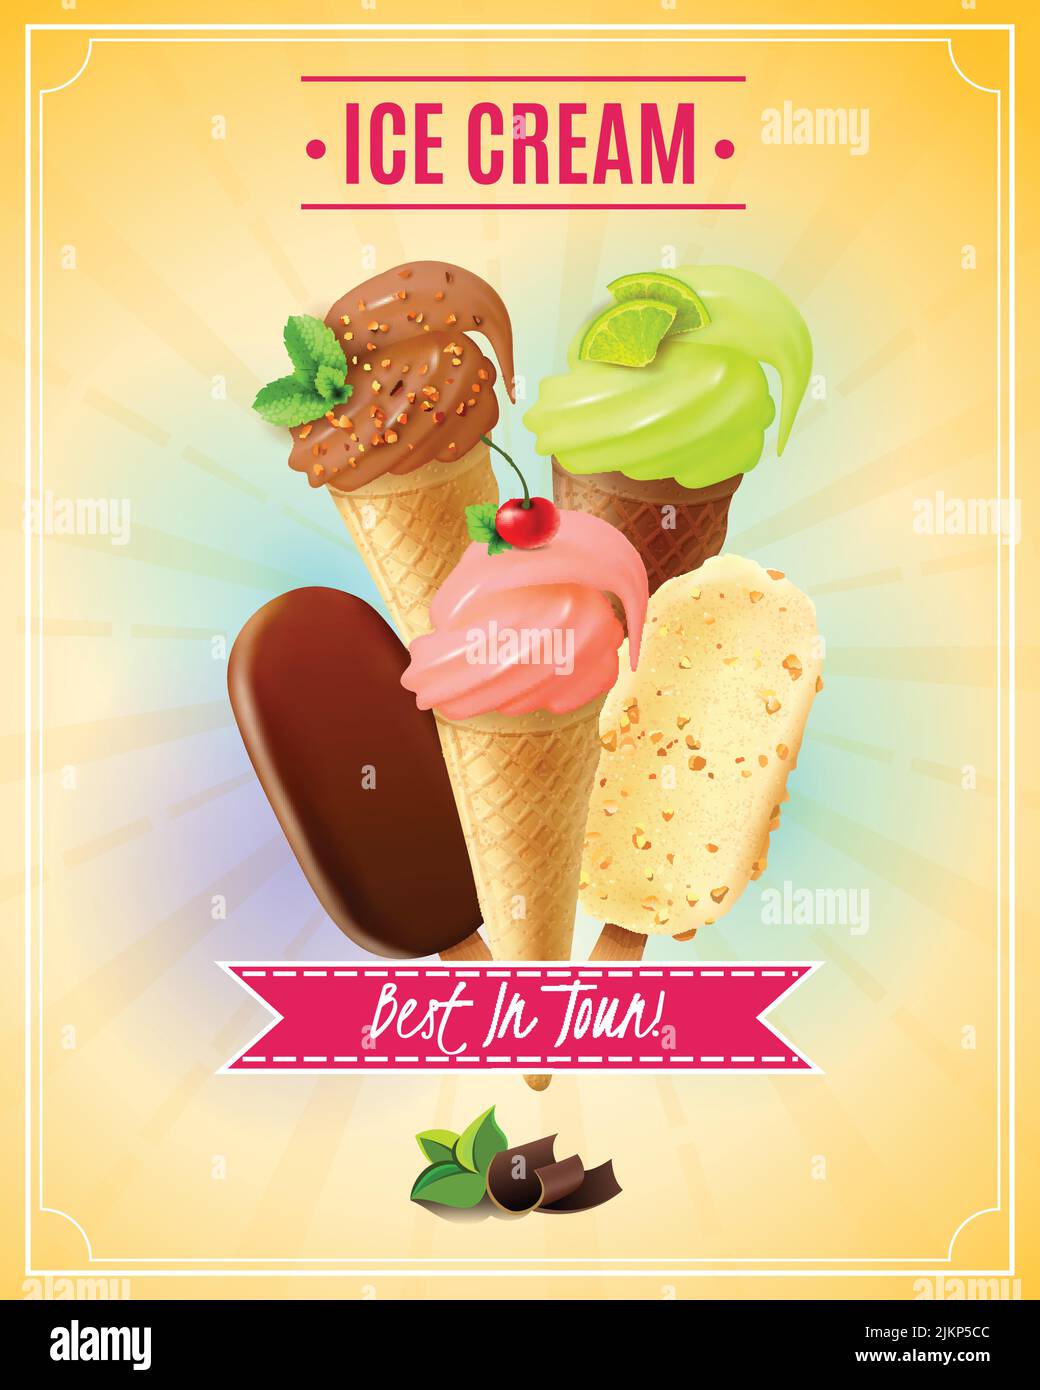 Illustration vectorielle avec glace au chocolat au pistache de cerise et gaufre cônes et noix tarte esquimau dans un style réaliste Illustration de Vecteur